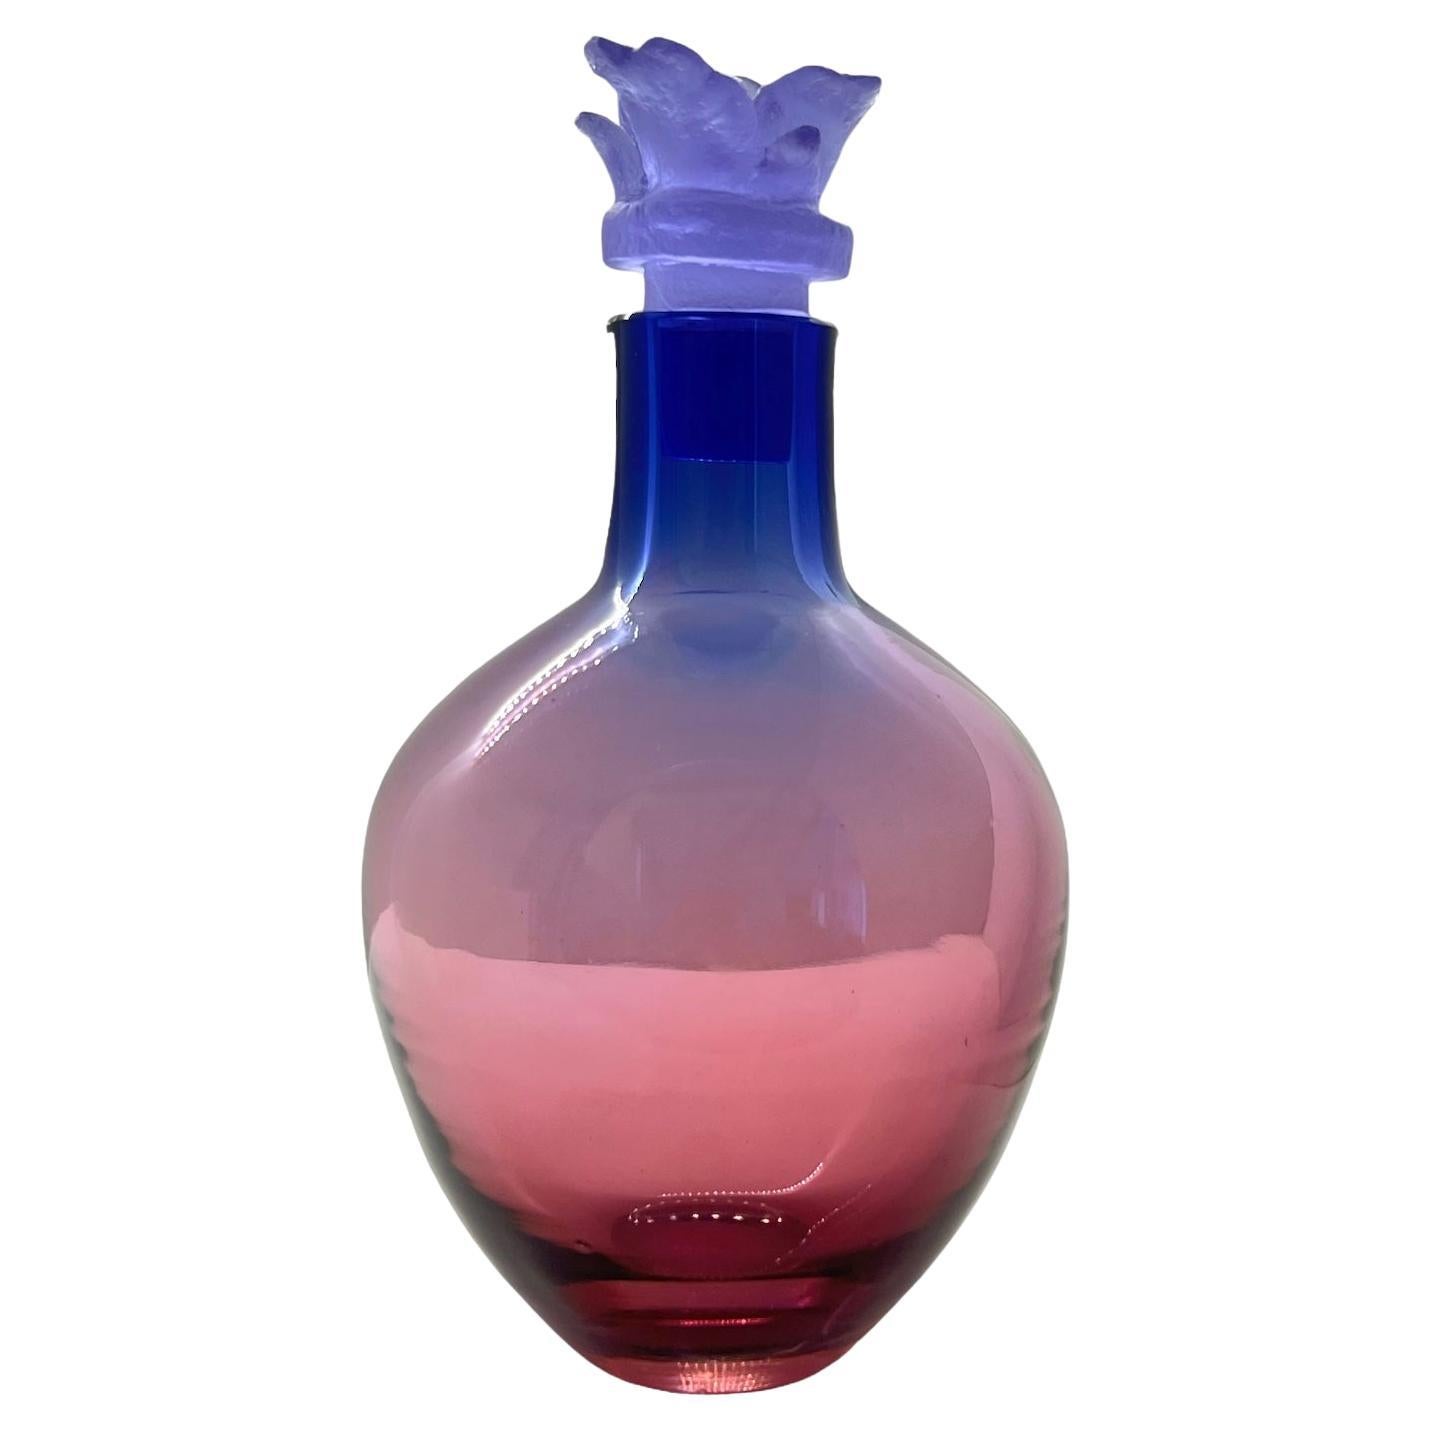 Carafe à liqueur en verre rose violet et bleu avec bouchon rose, fabriquée à la main